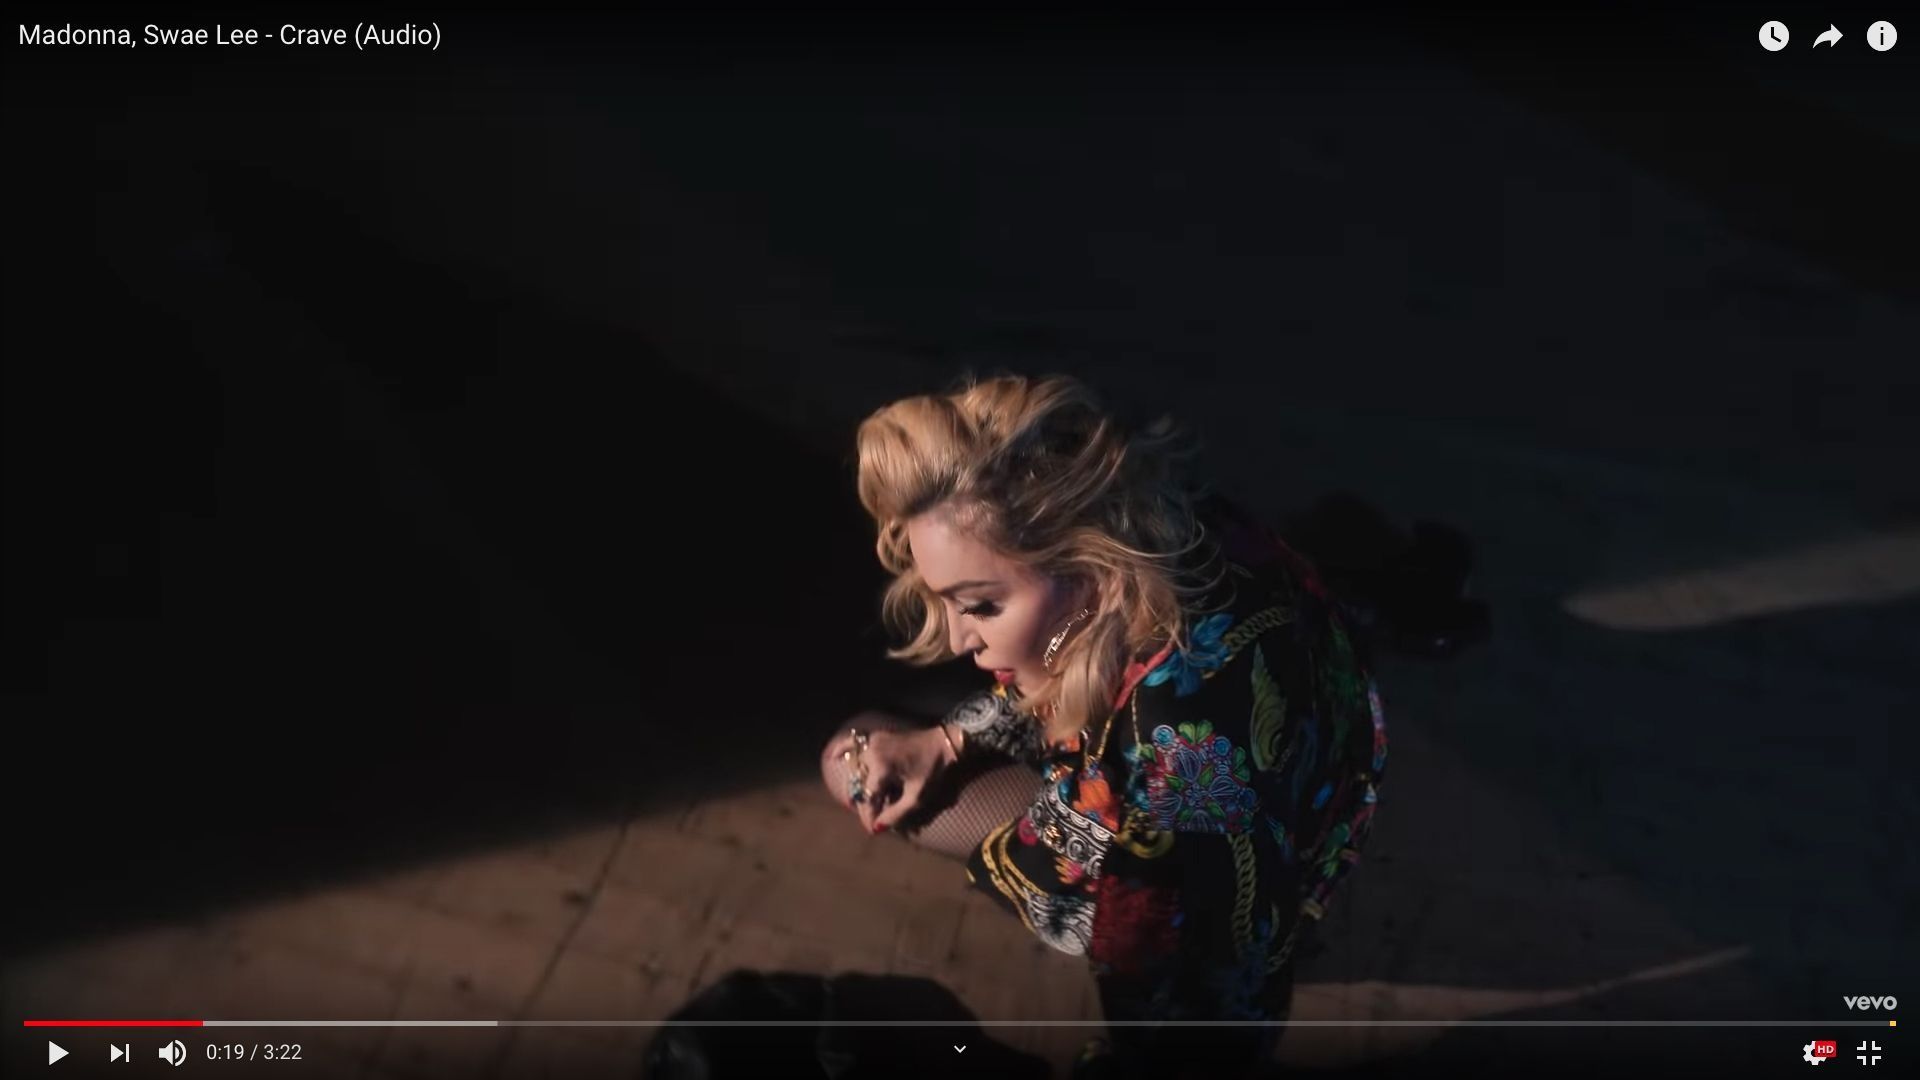 Madonna a dévoilé son dernier single "Crave", sur lequel figure le rappeur Swae Lee.